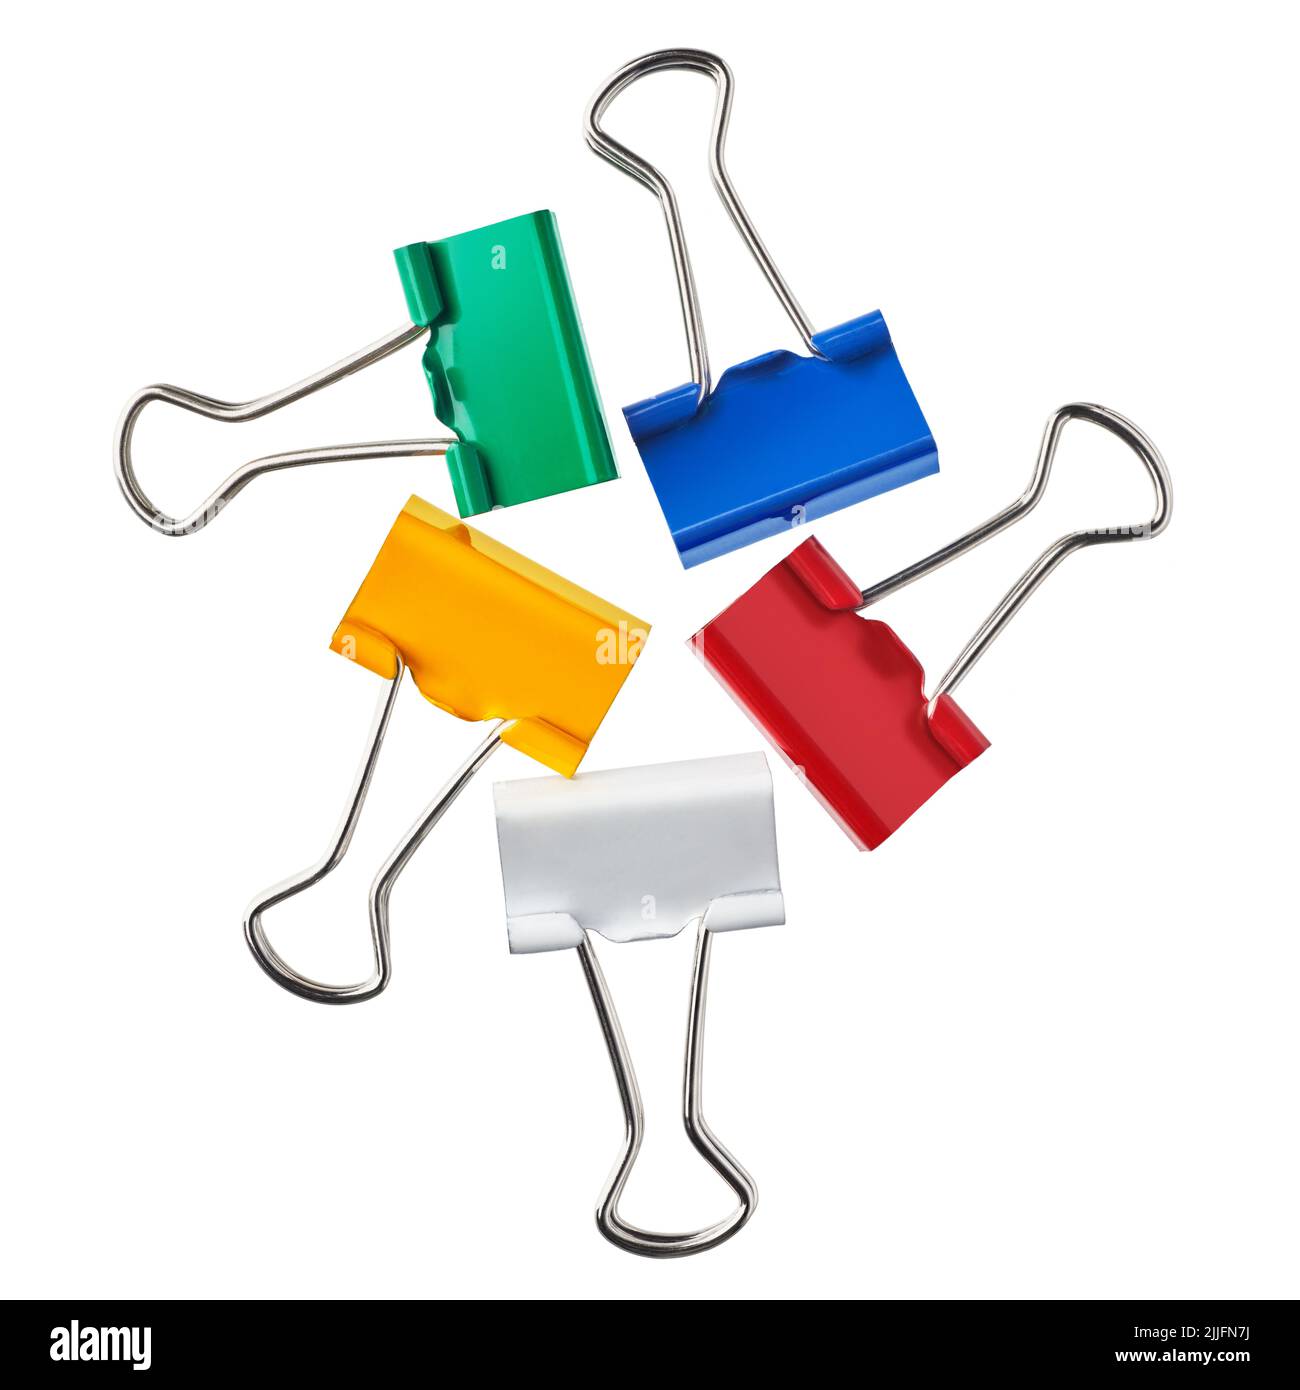 Grupo de clips multicolores, aislados sobre fondo blanco Foto de stock